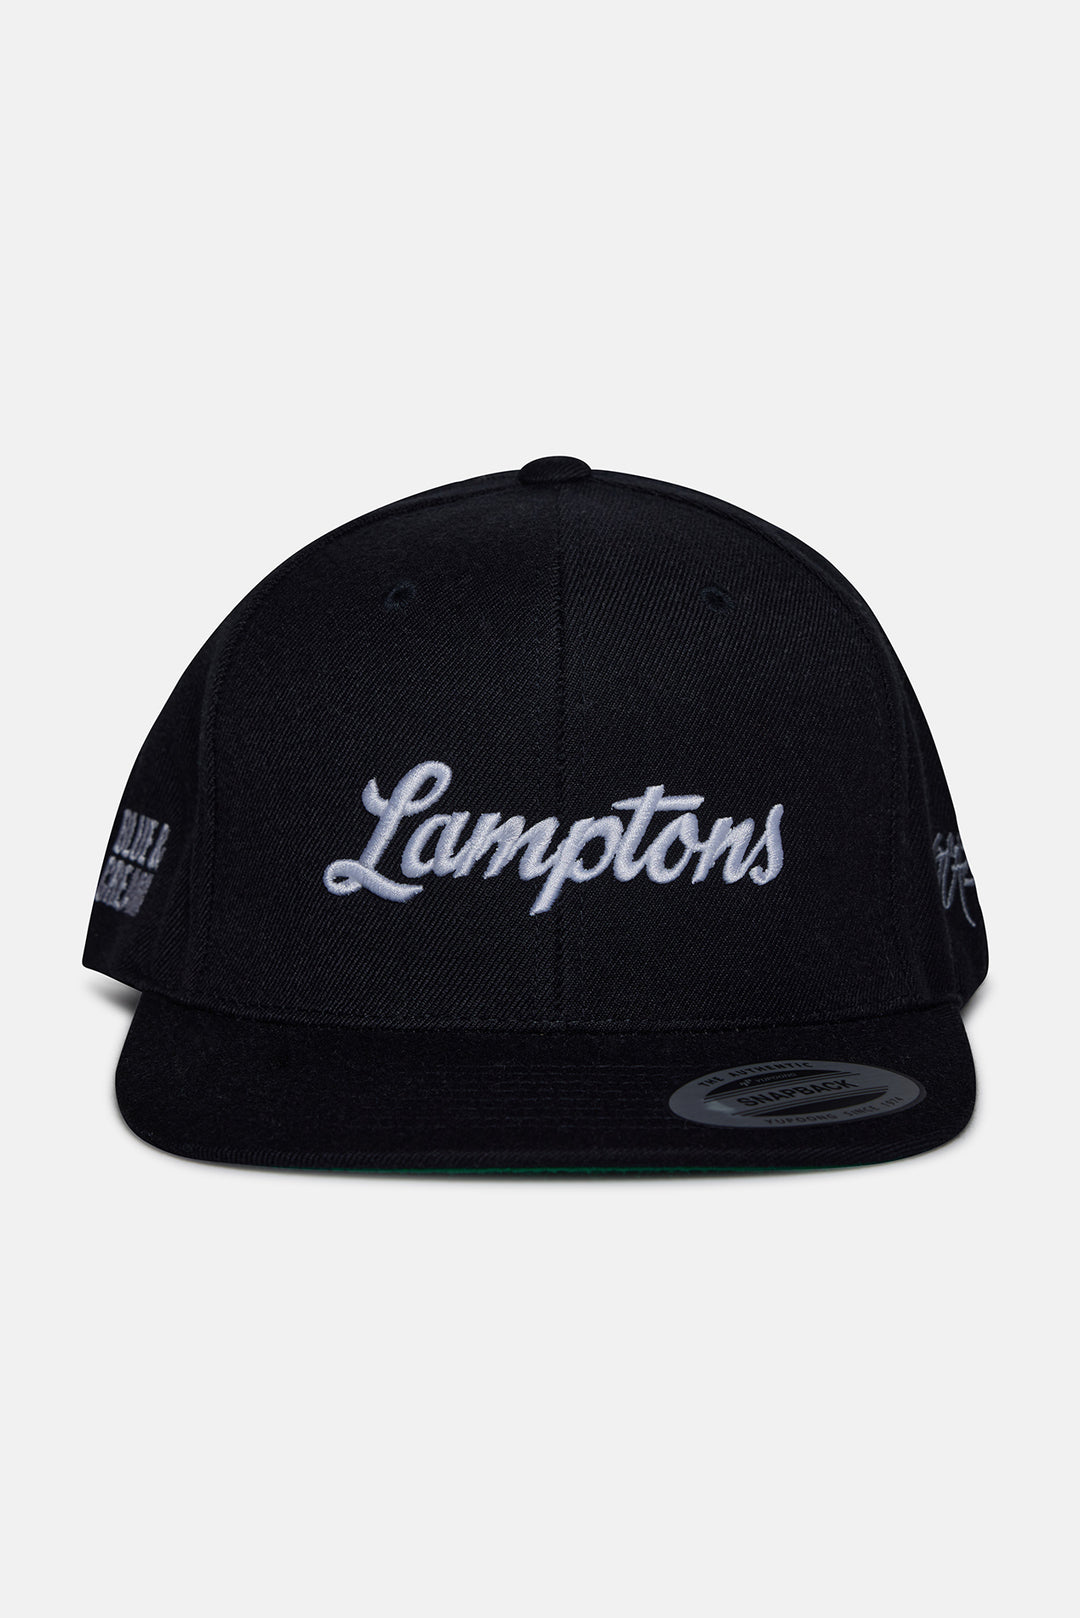 Lamptons Snapback Black